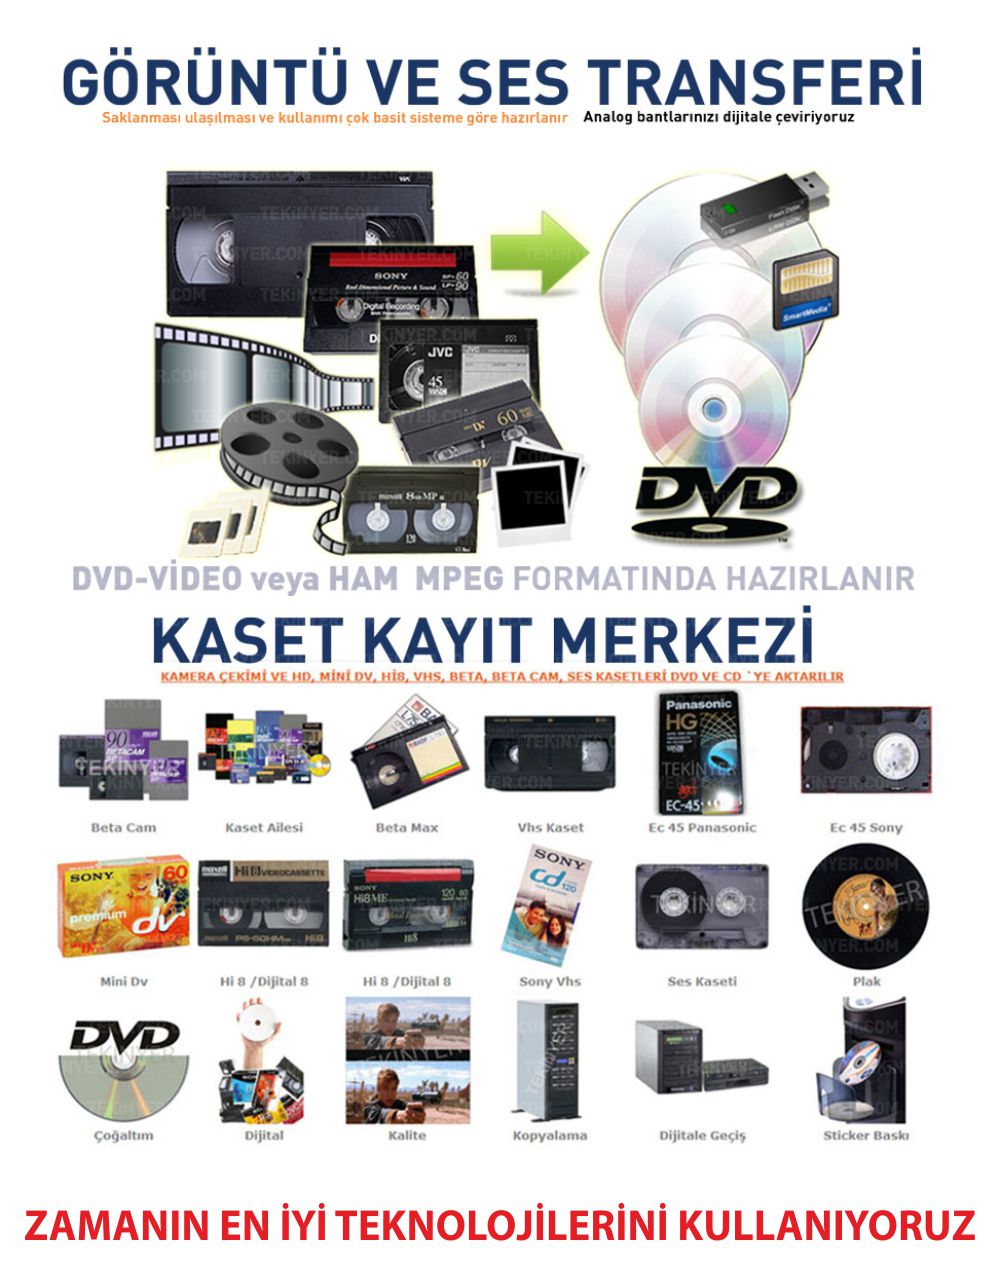 Kamera DVD si Kopyalama Kasetten Zamanın en iyi teknolijilerini kullanana Aktarım Kayıt İşlemi